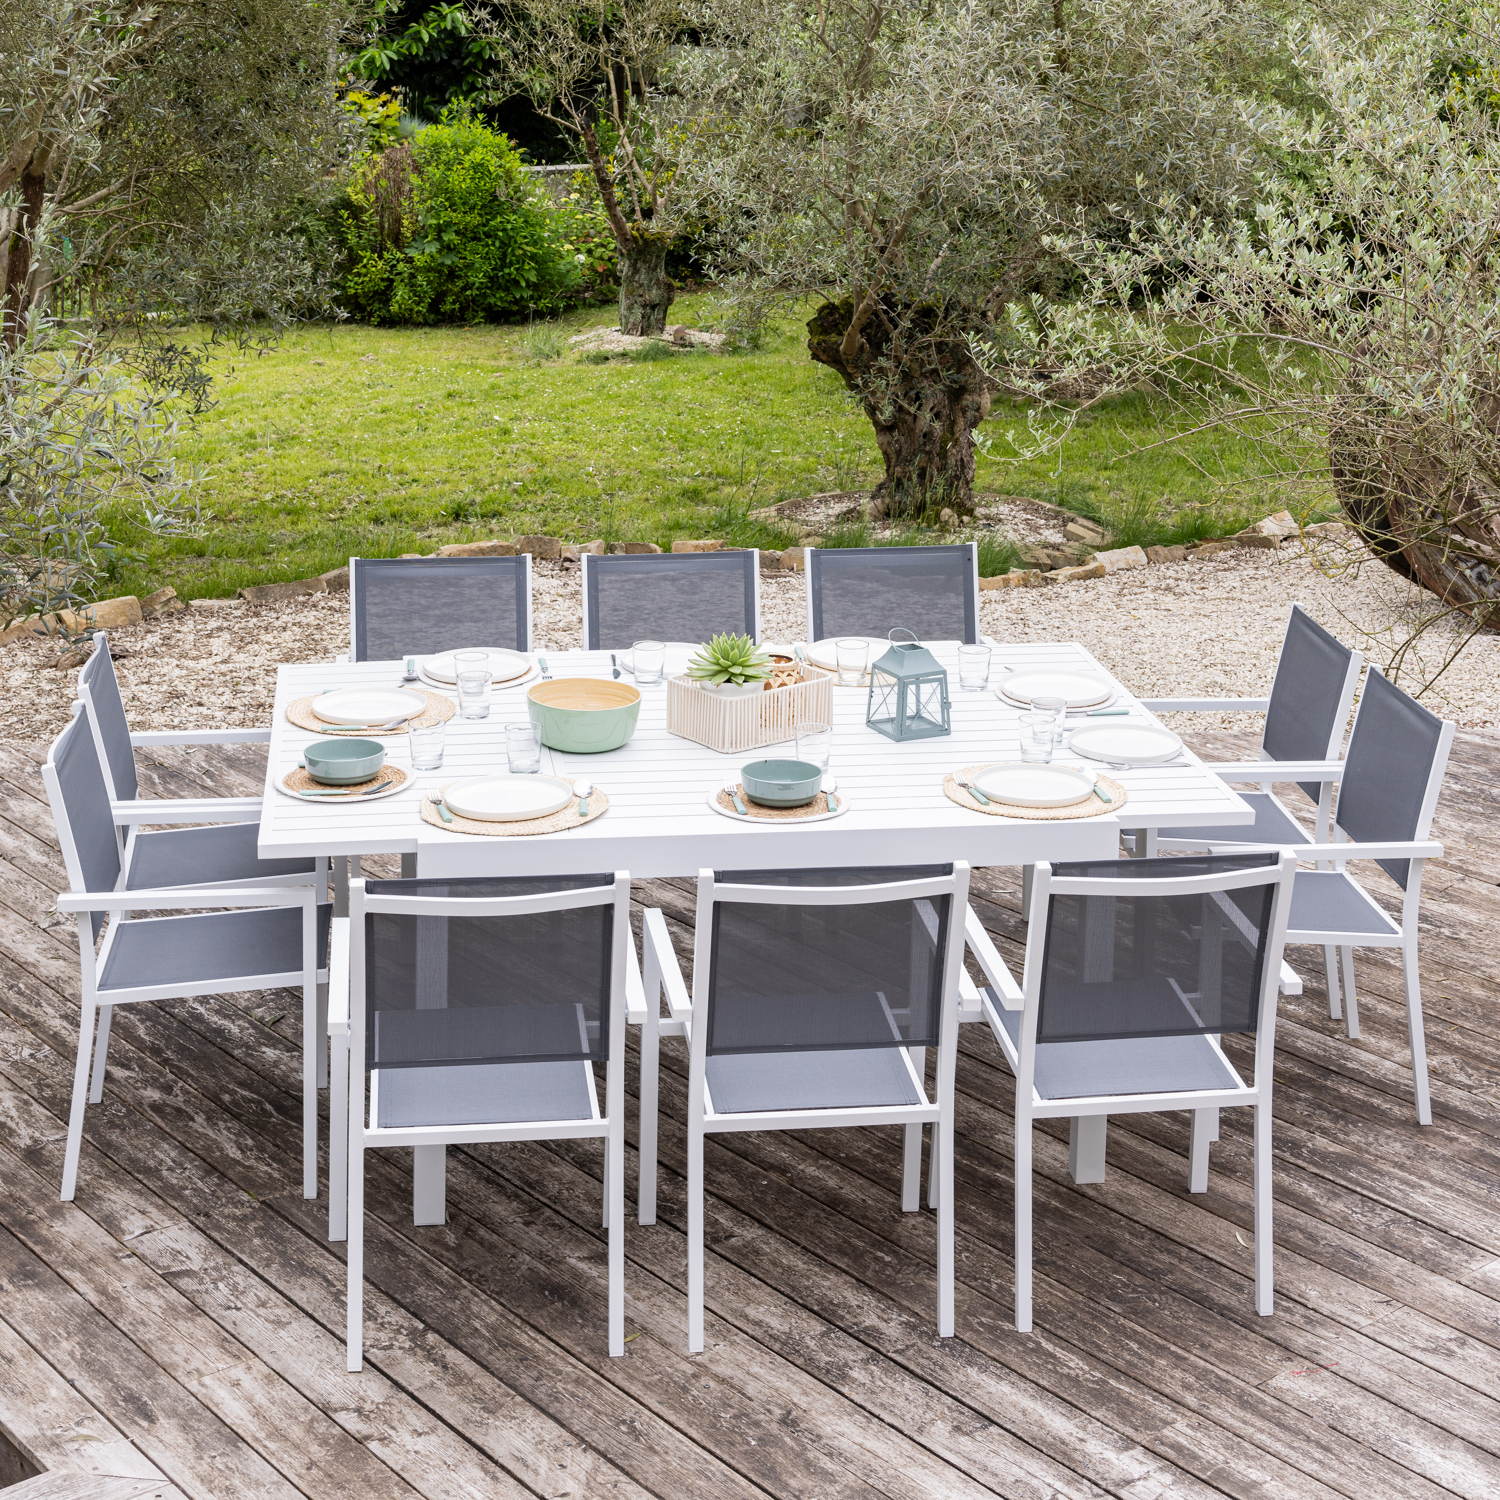 VENEZIA set di mobili da giardino estensibili in textilene grigio 140/200 - alluminio bianco